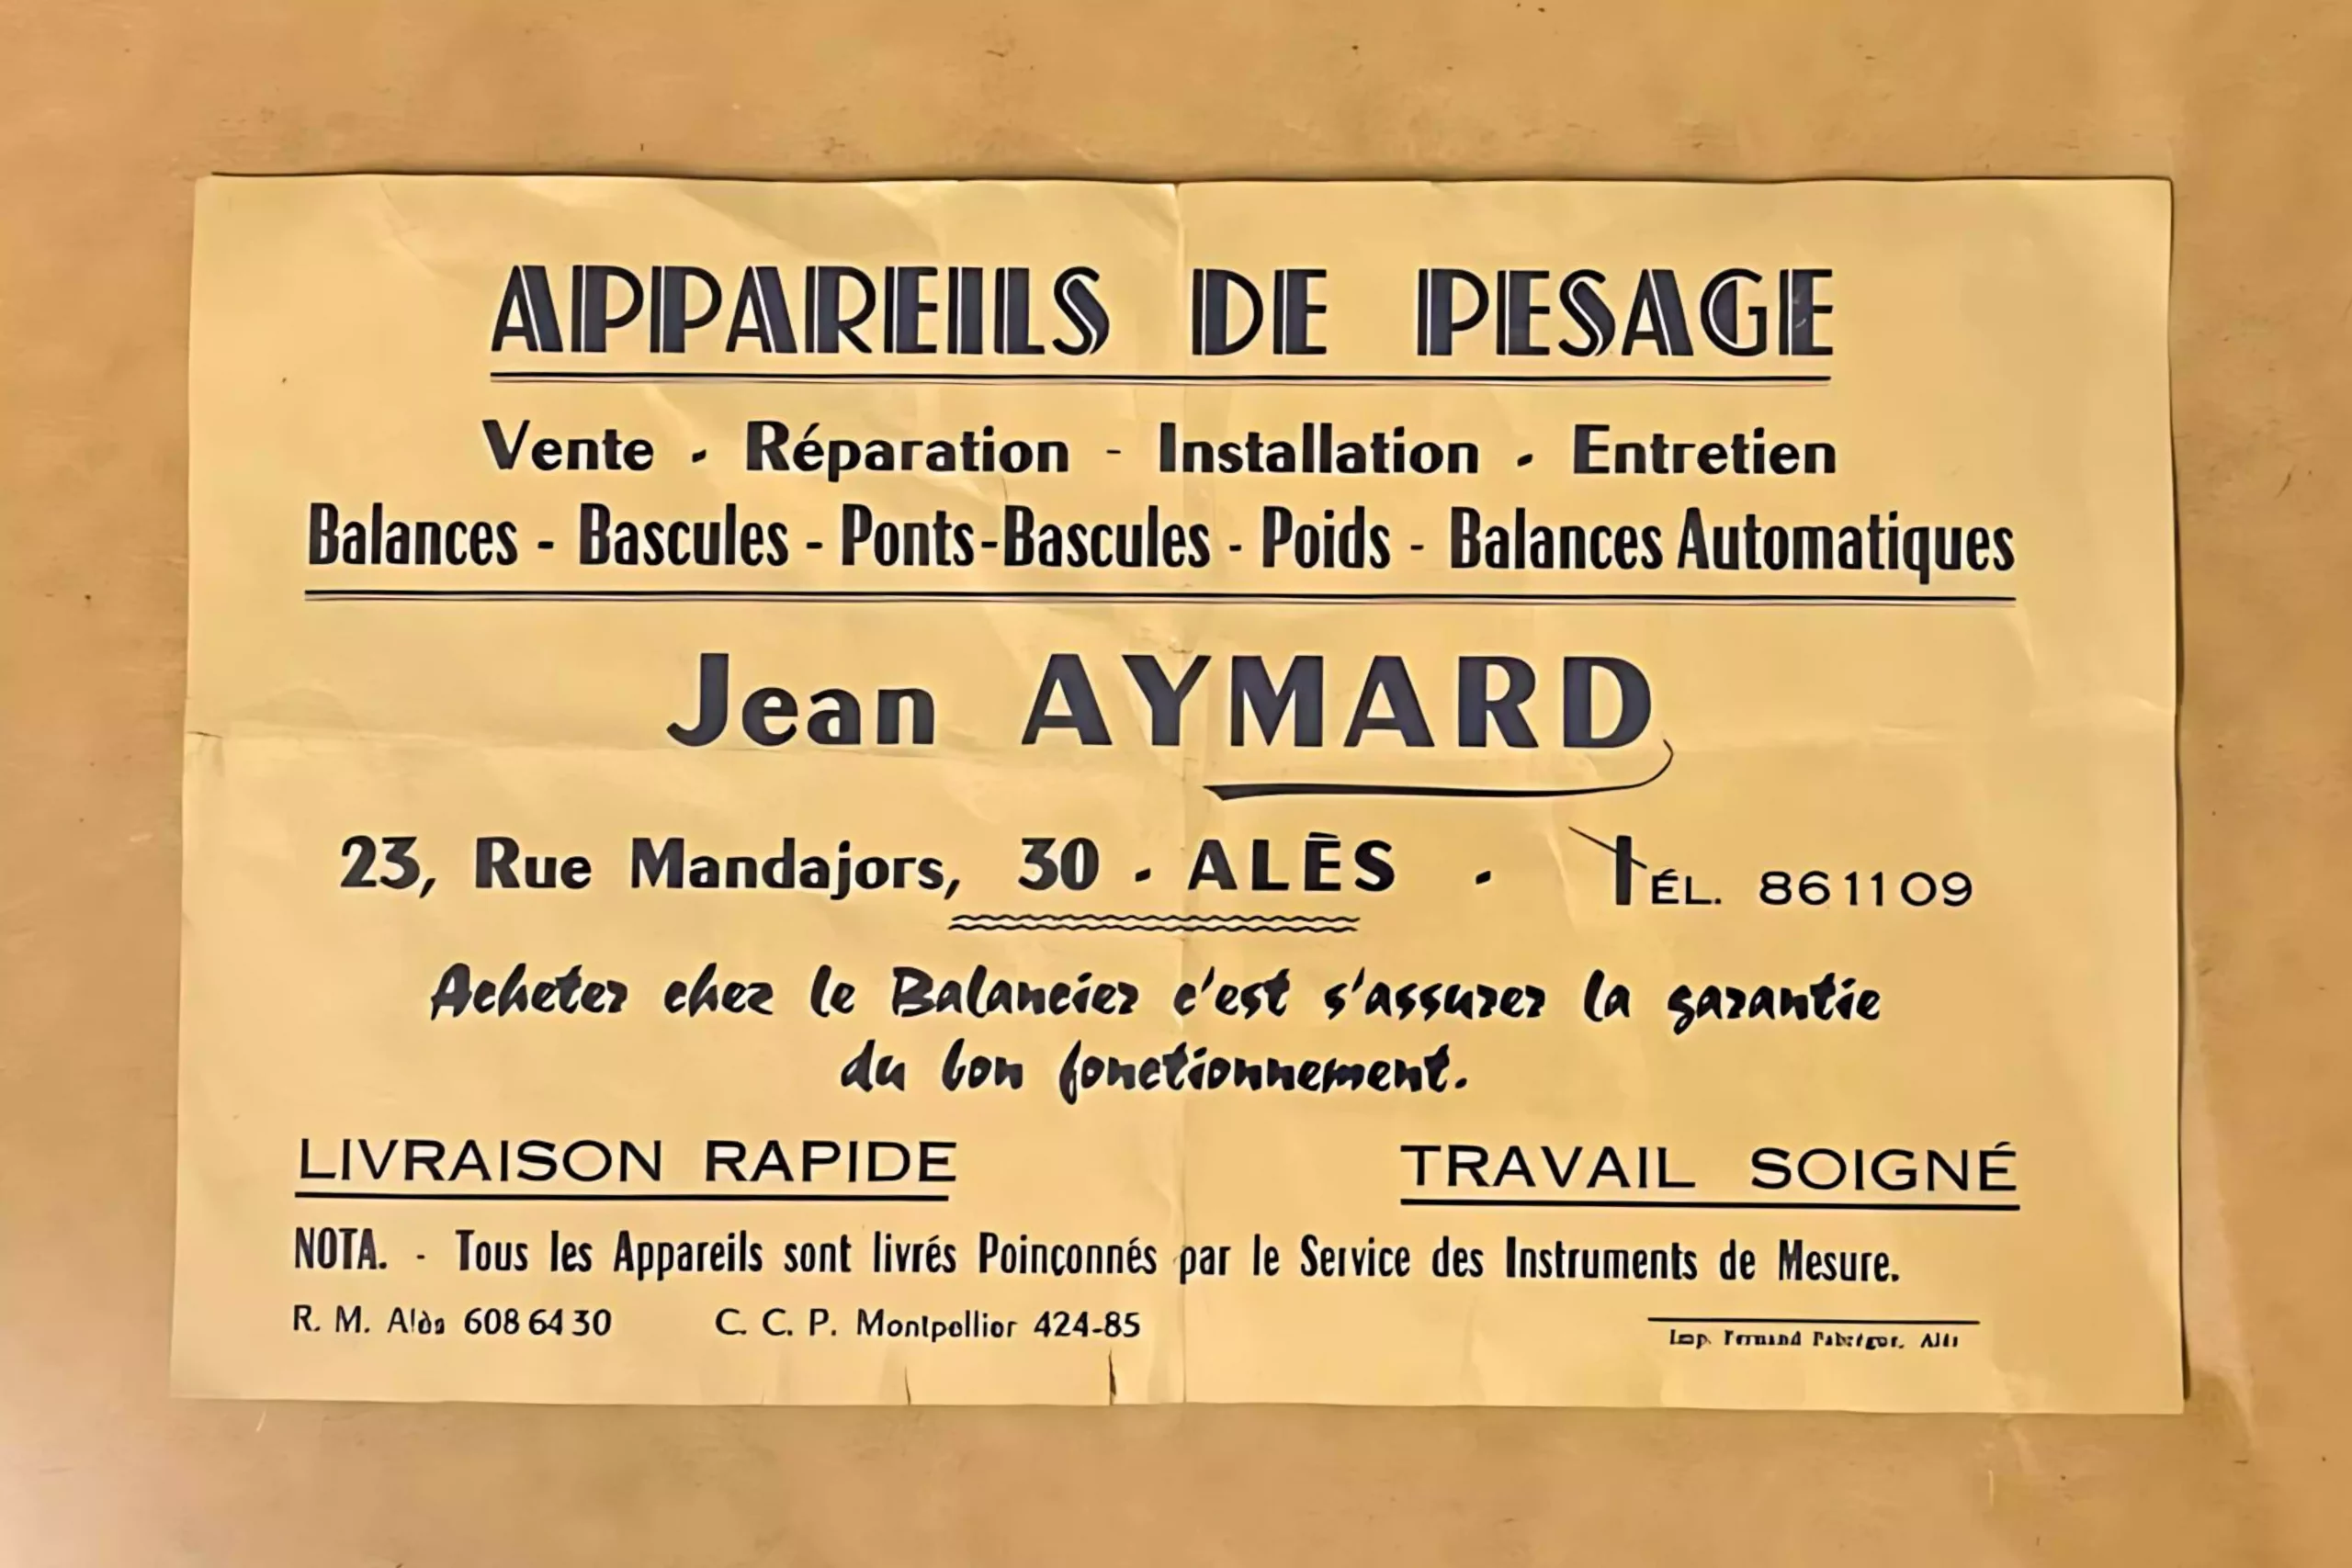 Étiquette commerçante daté des années 50 du fondateur d'Aymard Pesage - Jean Aymard.